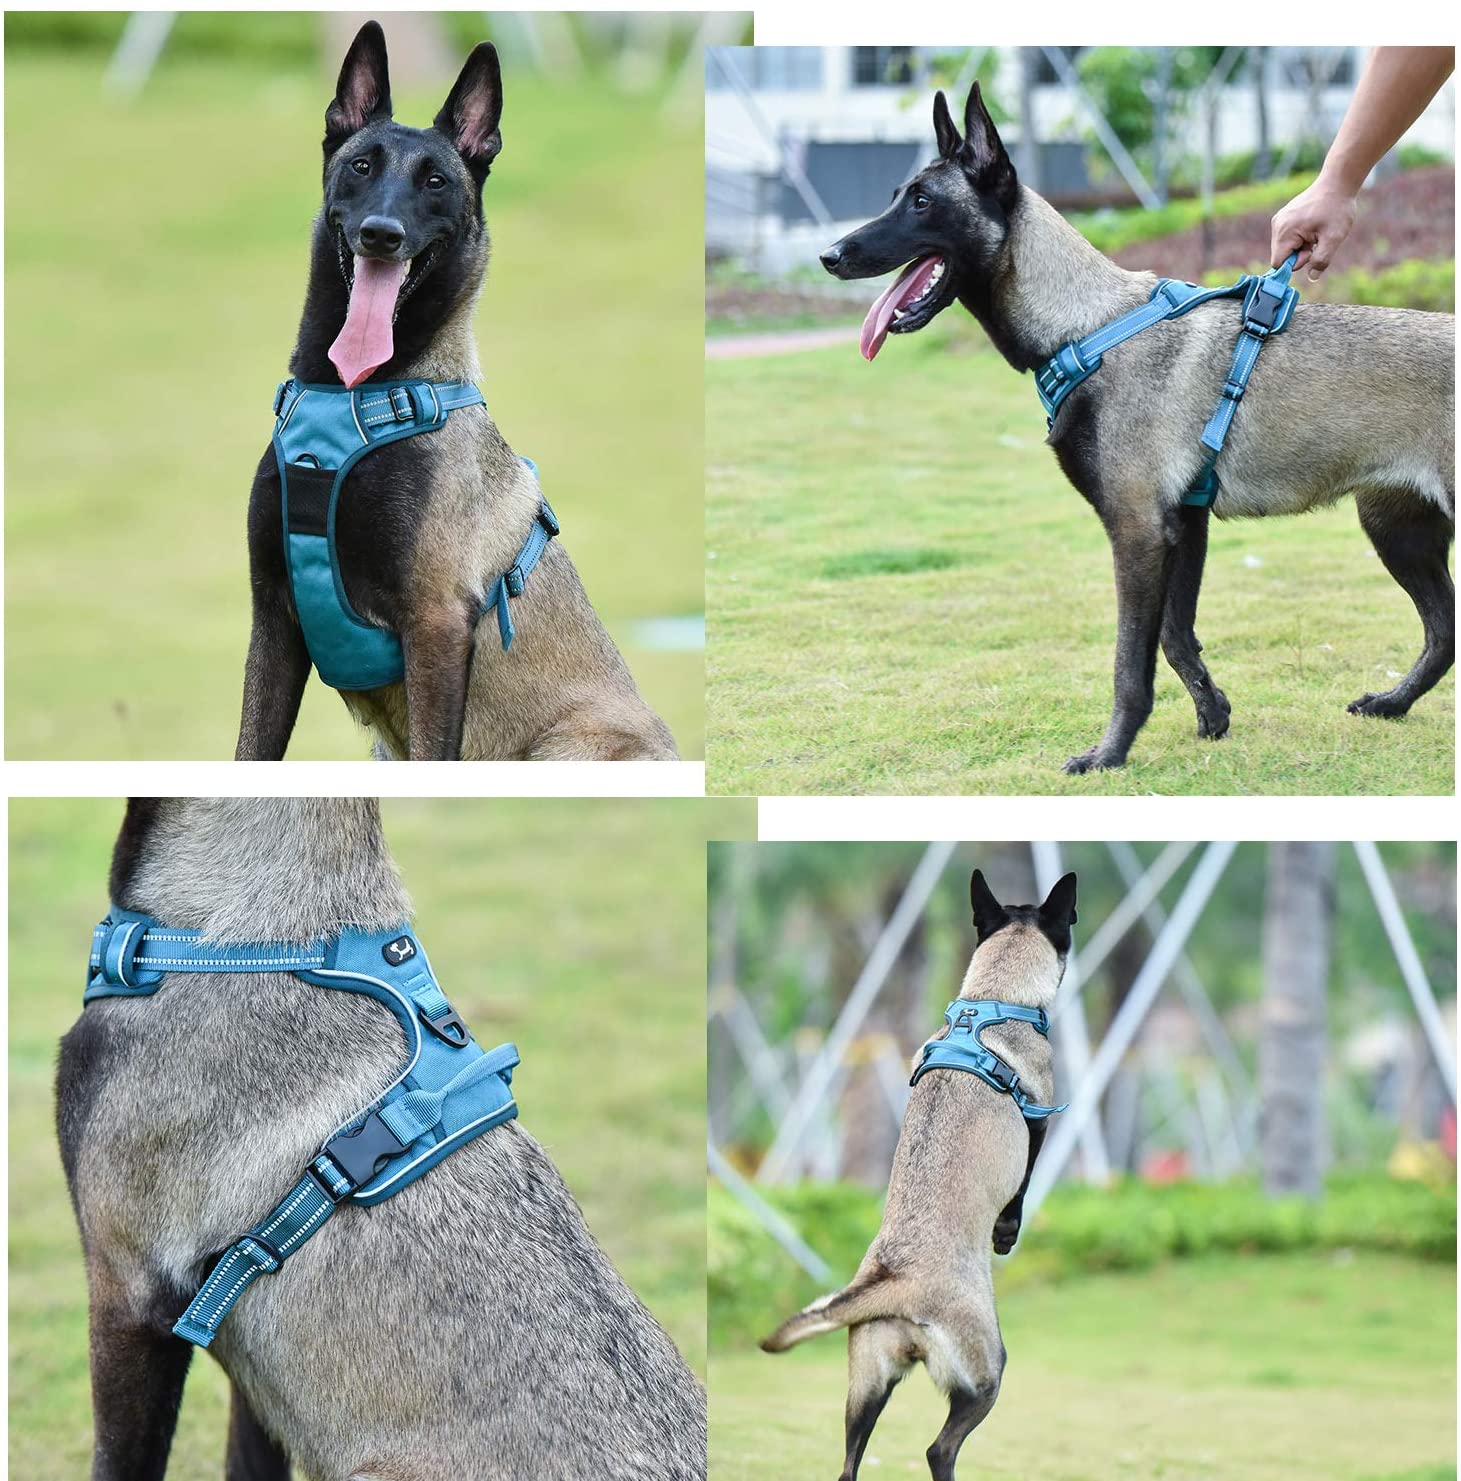  Arnés de perro ajustable de Truelove, de malla suave y transpirable, de nailon reflectante a 3 metros, para perros pequeños, medianos y grandes 